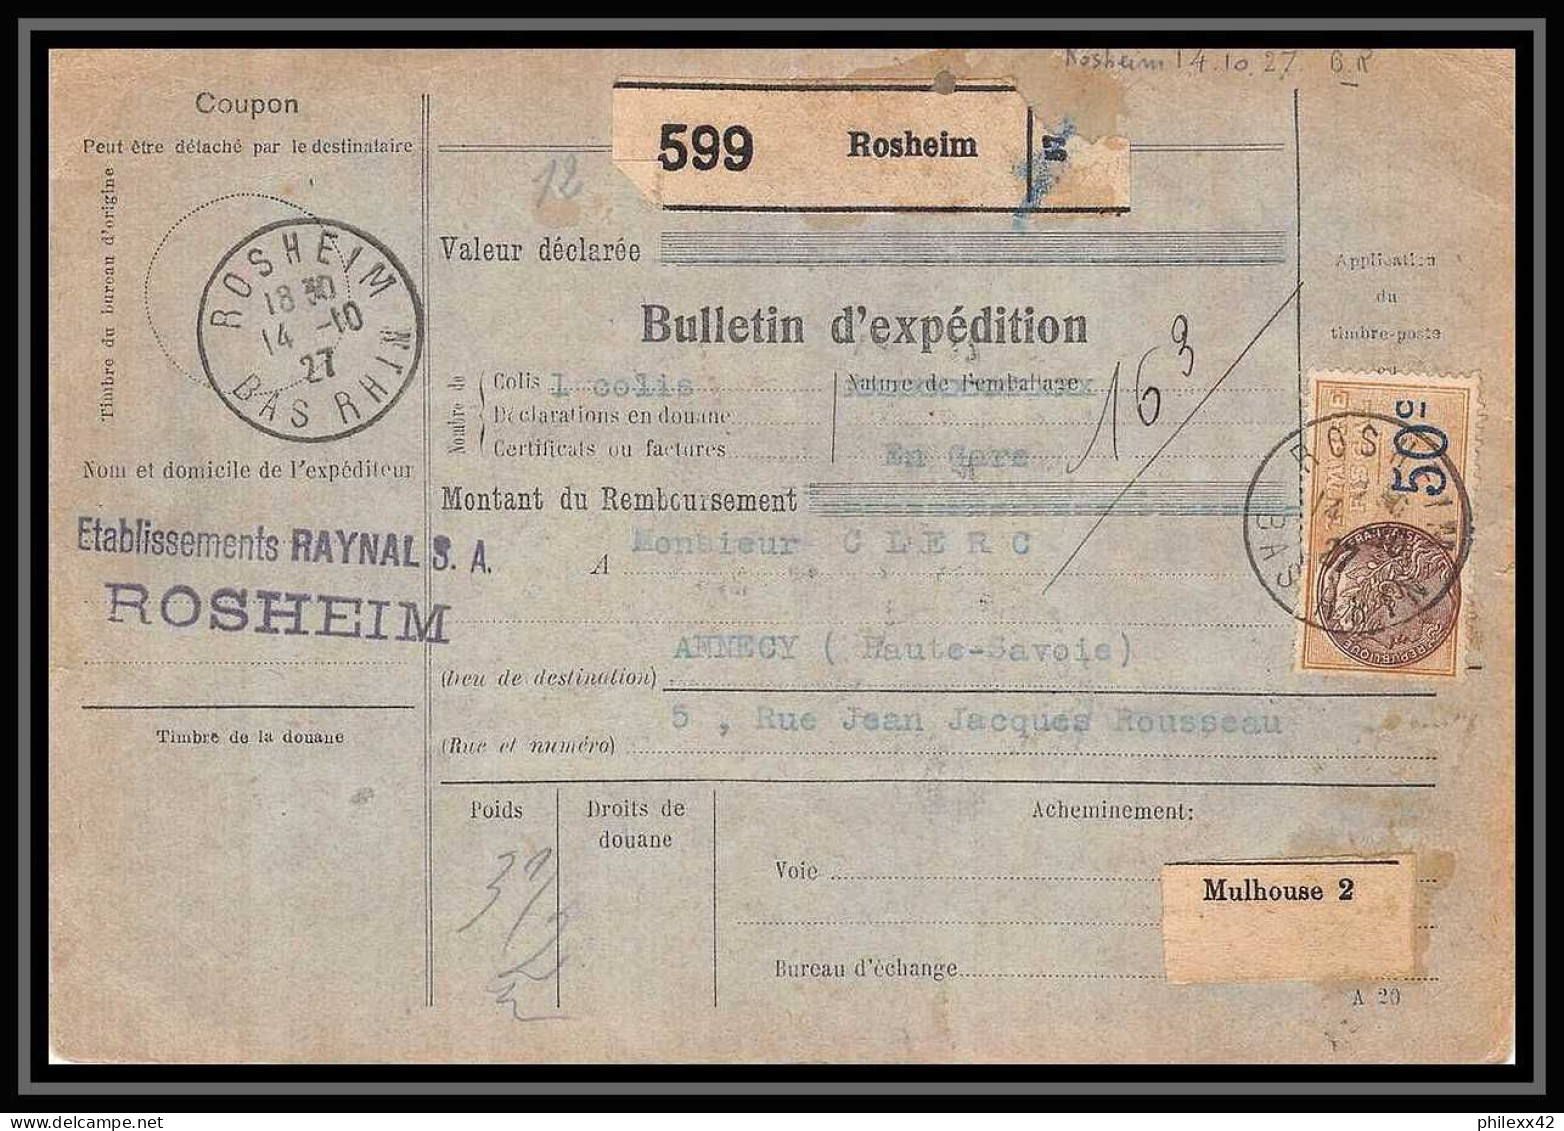 25280/ Bulletin D'expédition France Colis Postaux Fiscal Bas Rhin Rosheim Pour Annecy Haute Savoie 1927 Merson N°145 - Brieven & Documenten